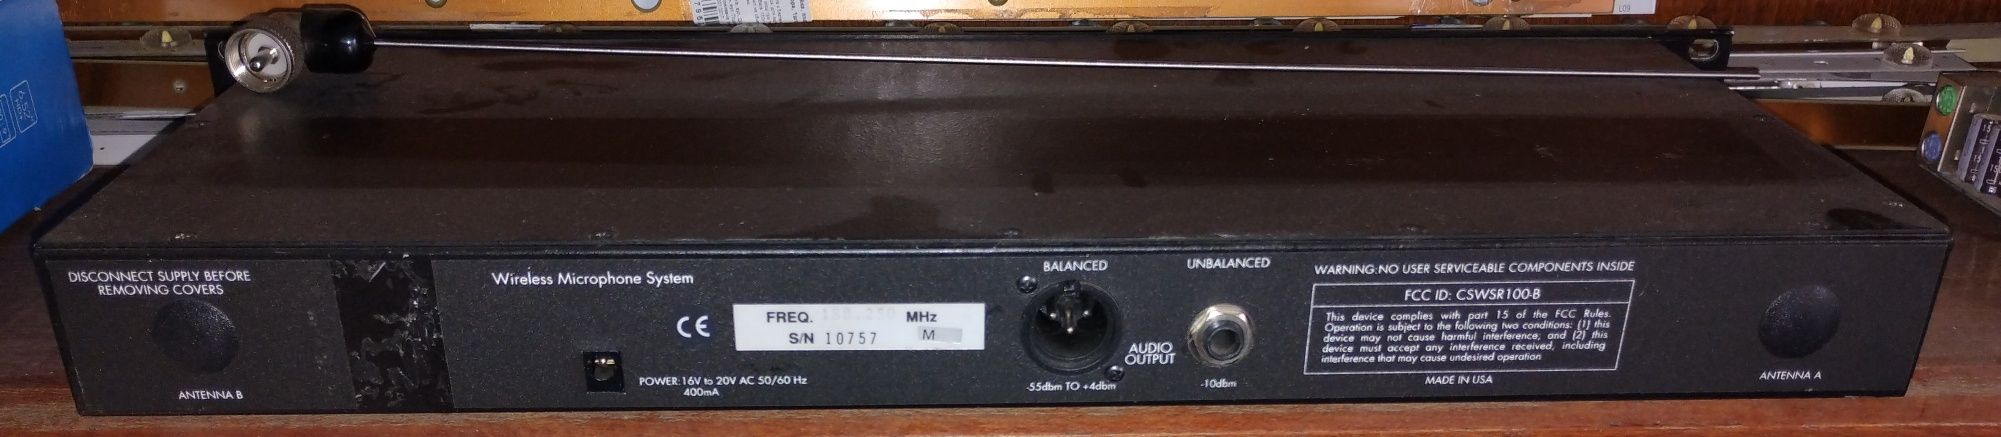 База ресивер радиомикрофона качество CSWSR100